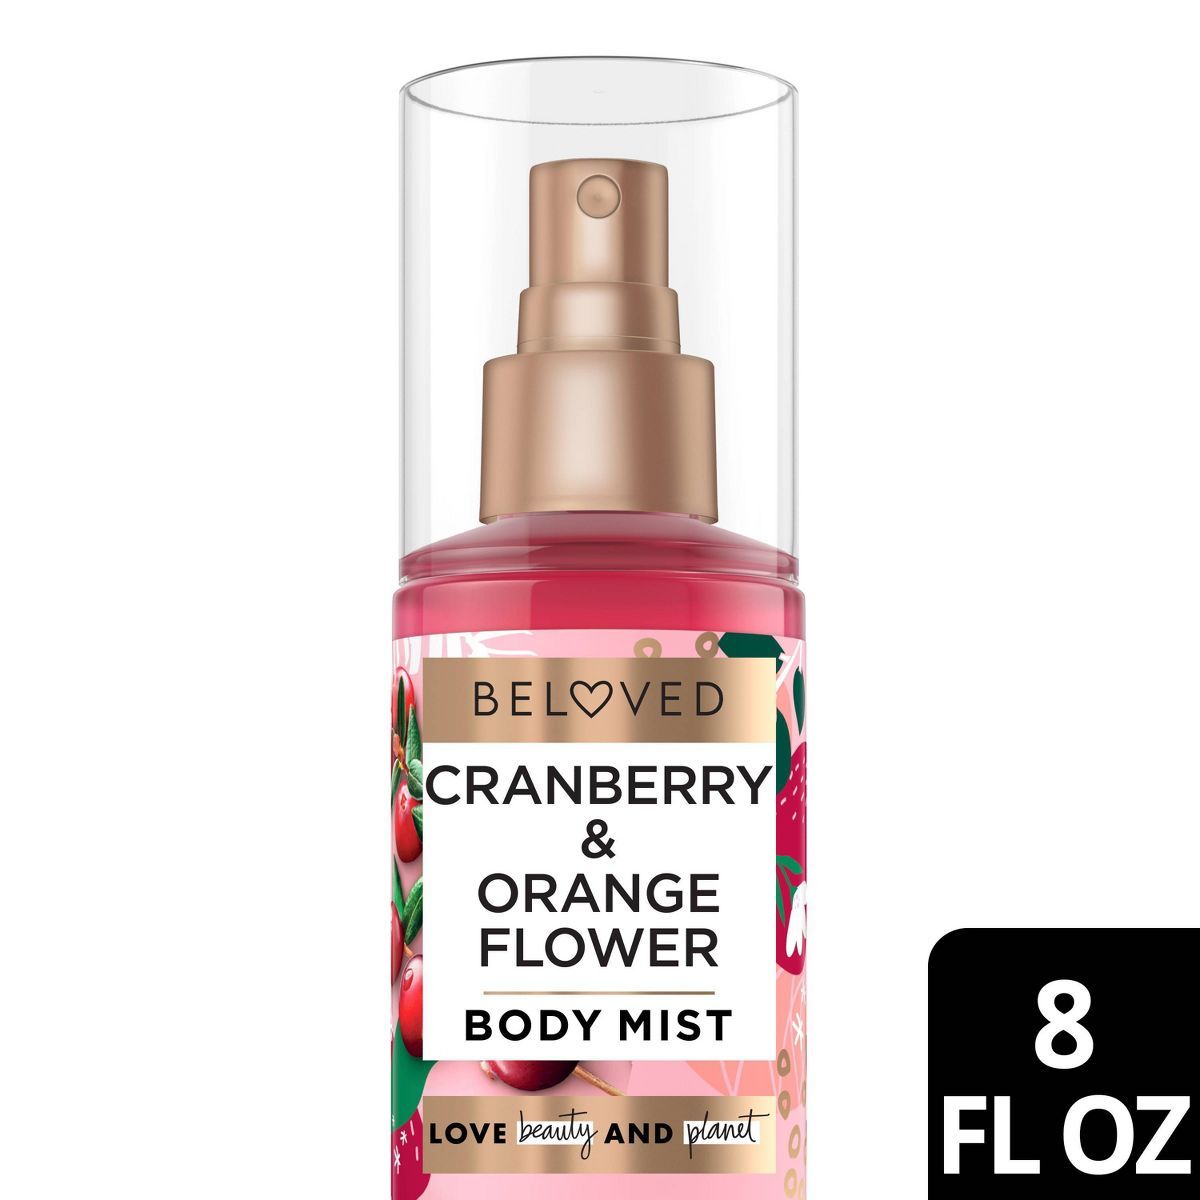 Beloved Cranberry and Orange Flower Body Mist - 8 fl oz | Target